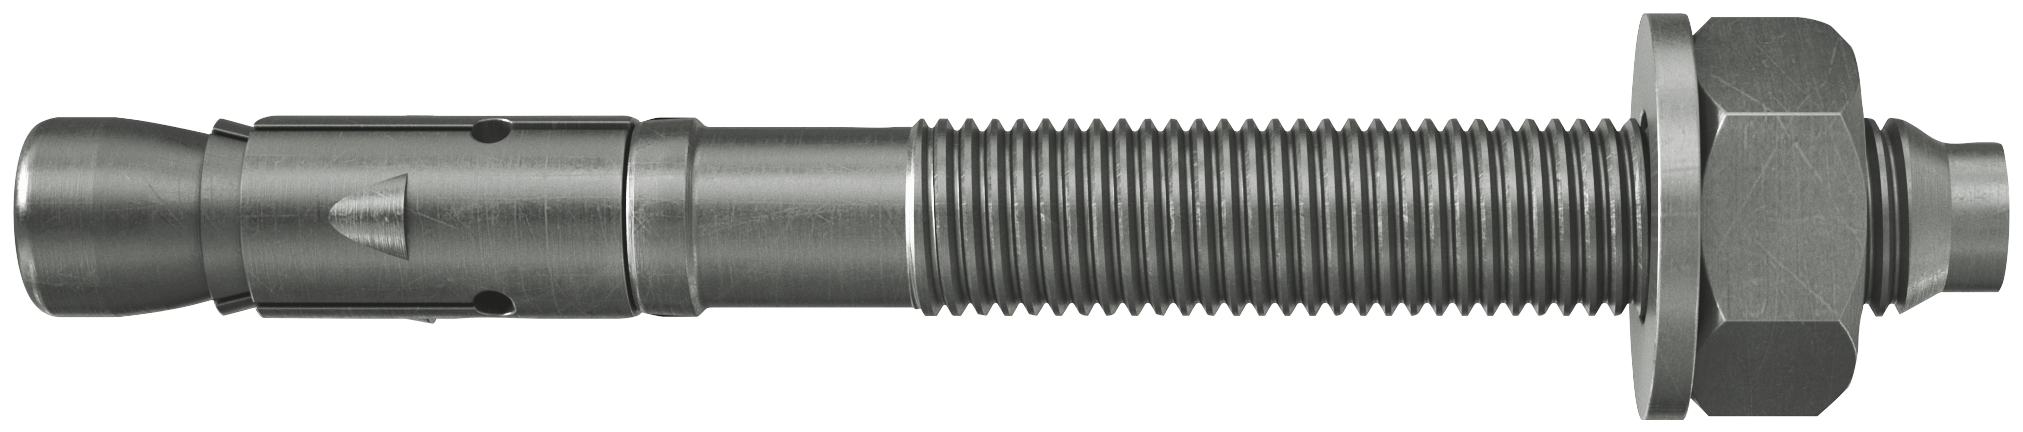 fischer Tassello acciaio FAZ II 16/50 A4 (20 Pz.) L'ancorante ad espansione ad alte prestazioni per carichi statici su calcestruzzo fessurato e per applicazioni sismiche. Versione in acciaio inossidabile con classe di resistenza alla corrosione CRC III..